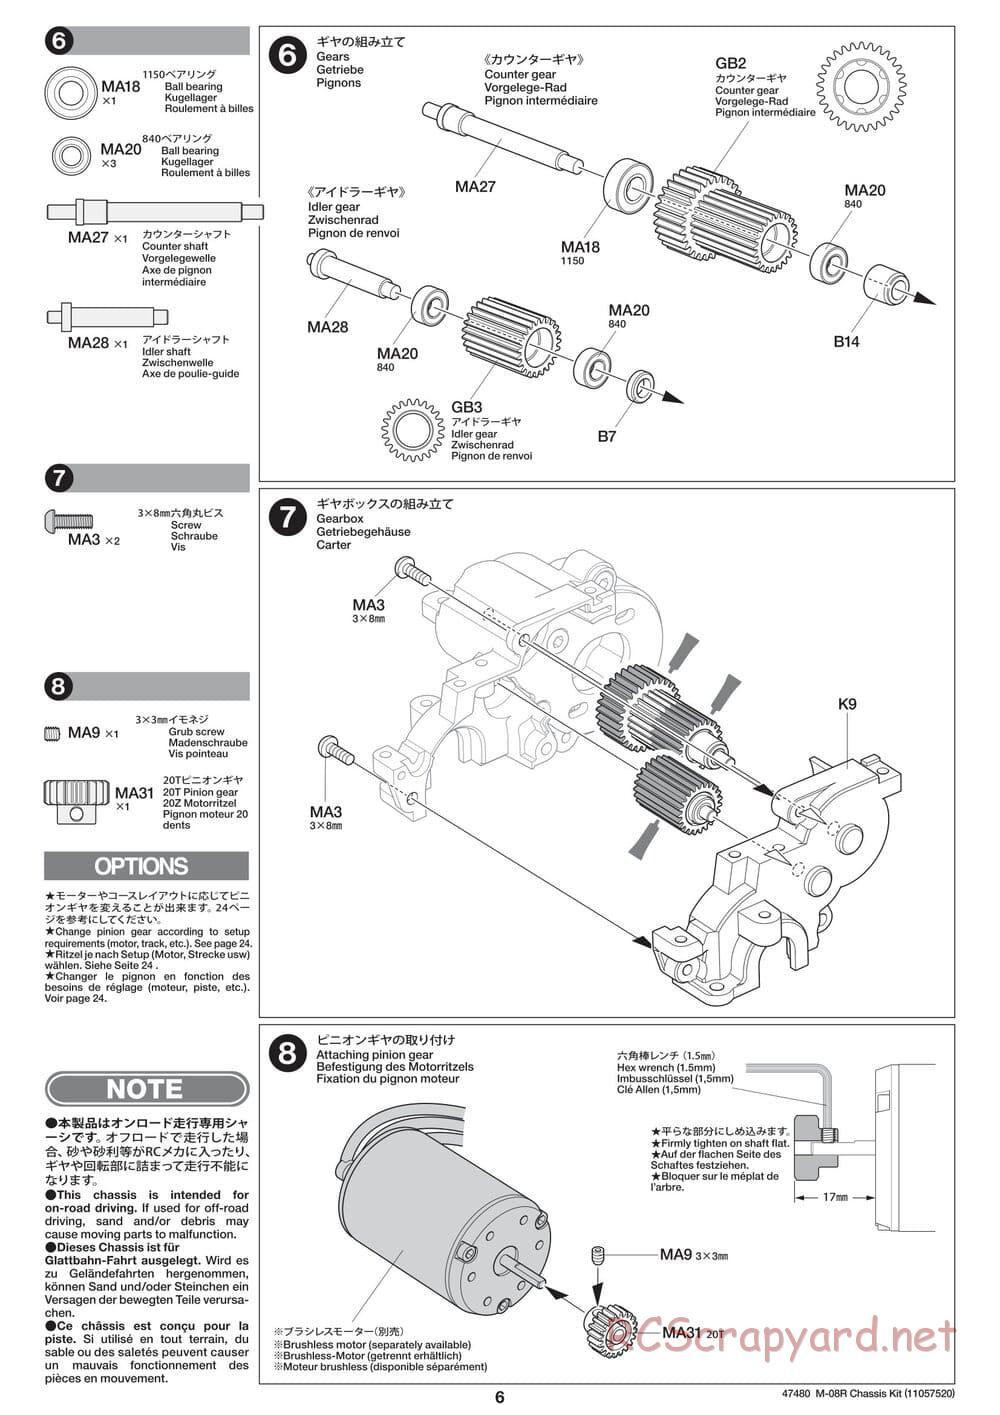 Tamiya - M-08R Chassis - Manual - Page 6